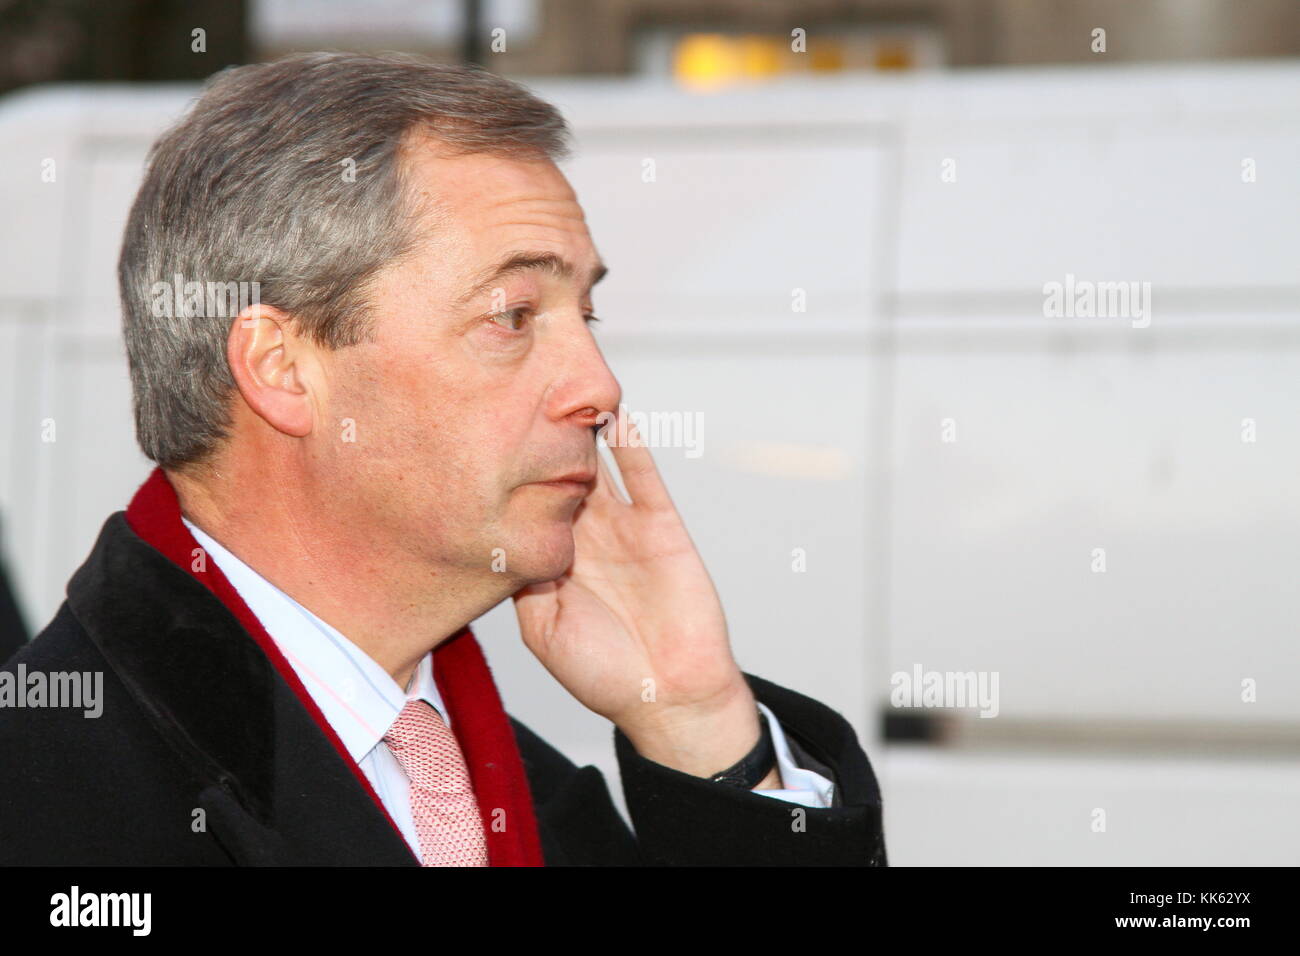 Nigel Farage a Westminster il 5 dicembre 2012. DEPUTATO AL PARLAMENTO EUROPEO. DEPUTATI AL PARLAMENTO EUROPEO. Politica britannica. Politici britannici. Pagina del portfolio Russell Moore. Foto Stock